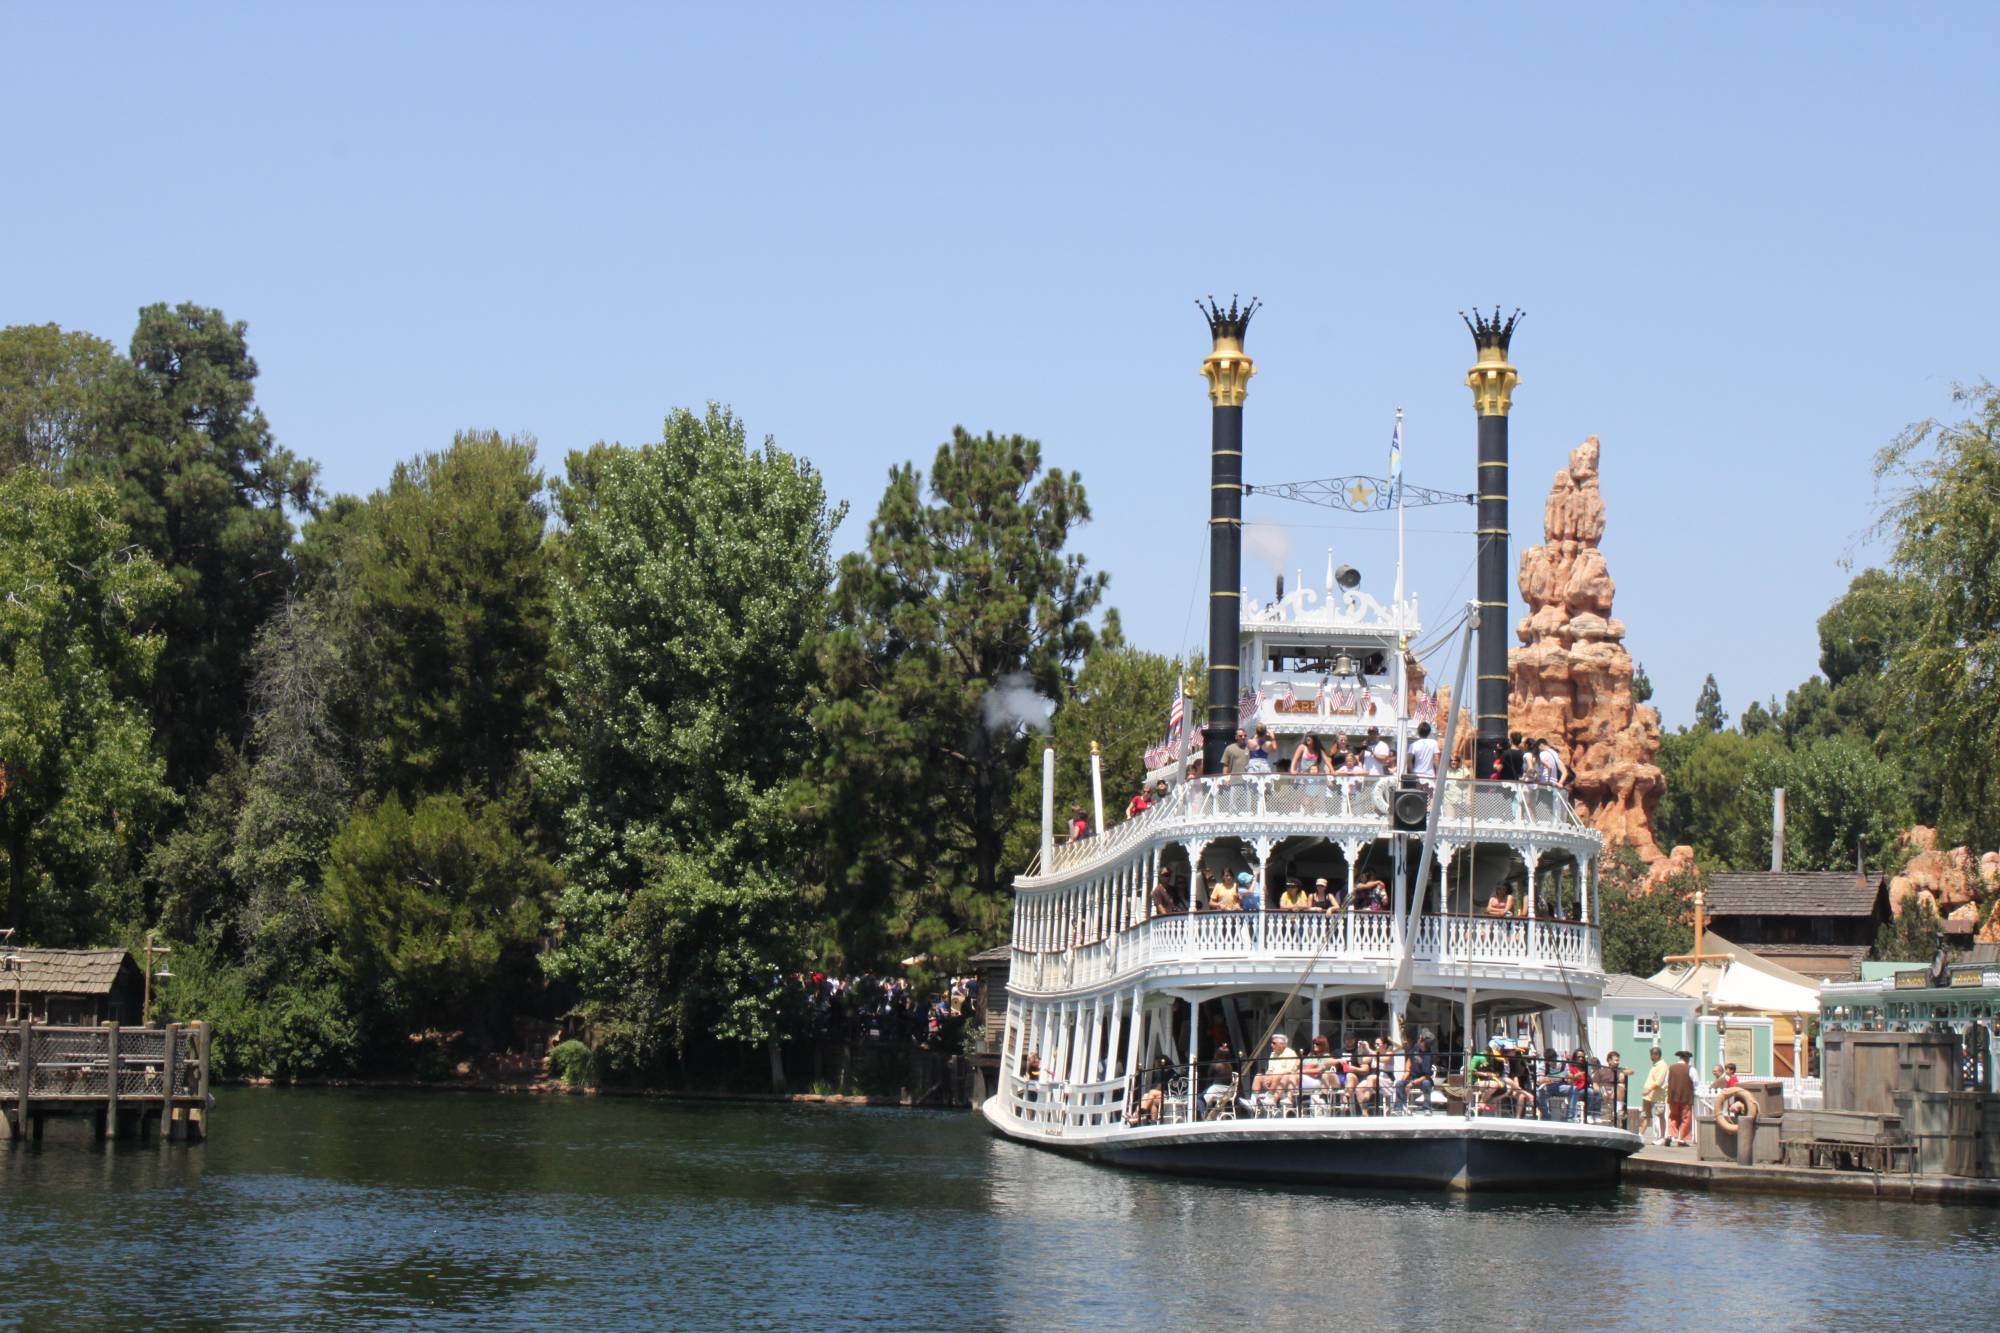 Disneyland - Rivers of America - Mark Twain Riverboat